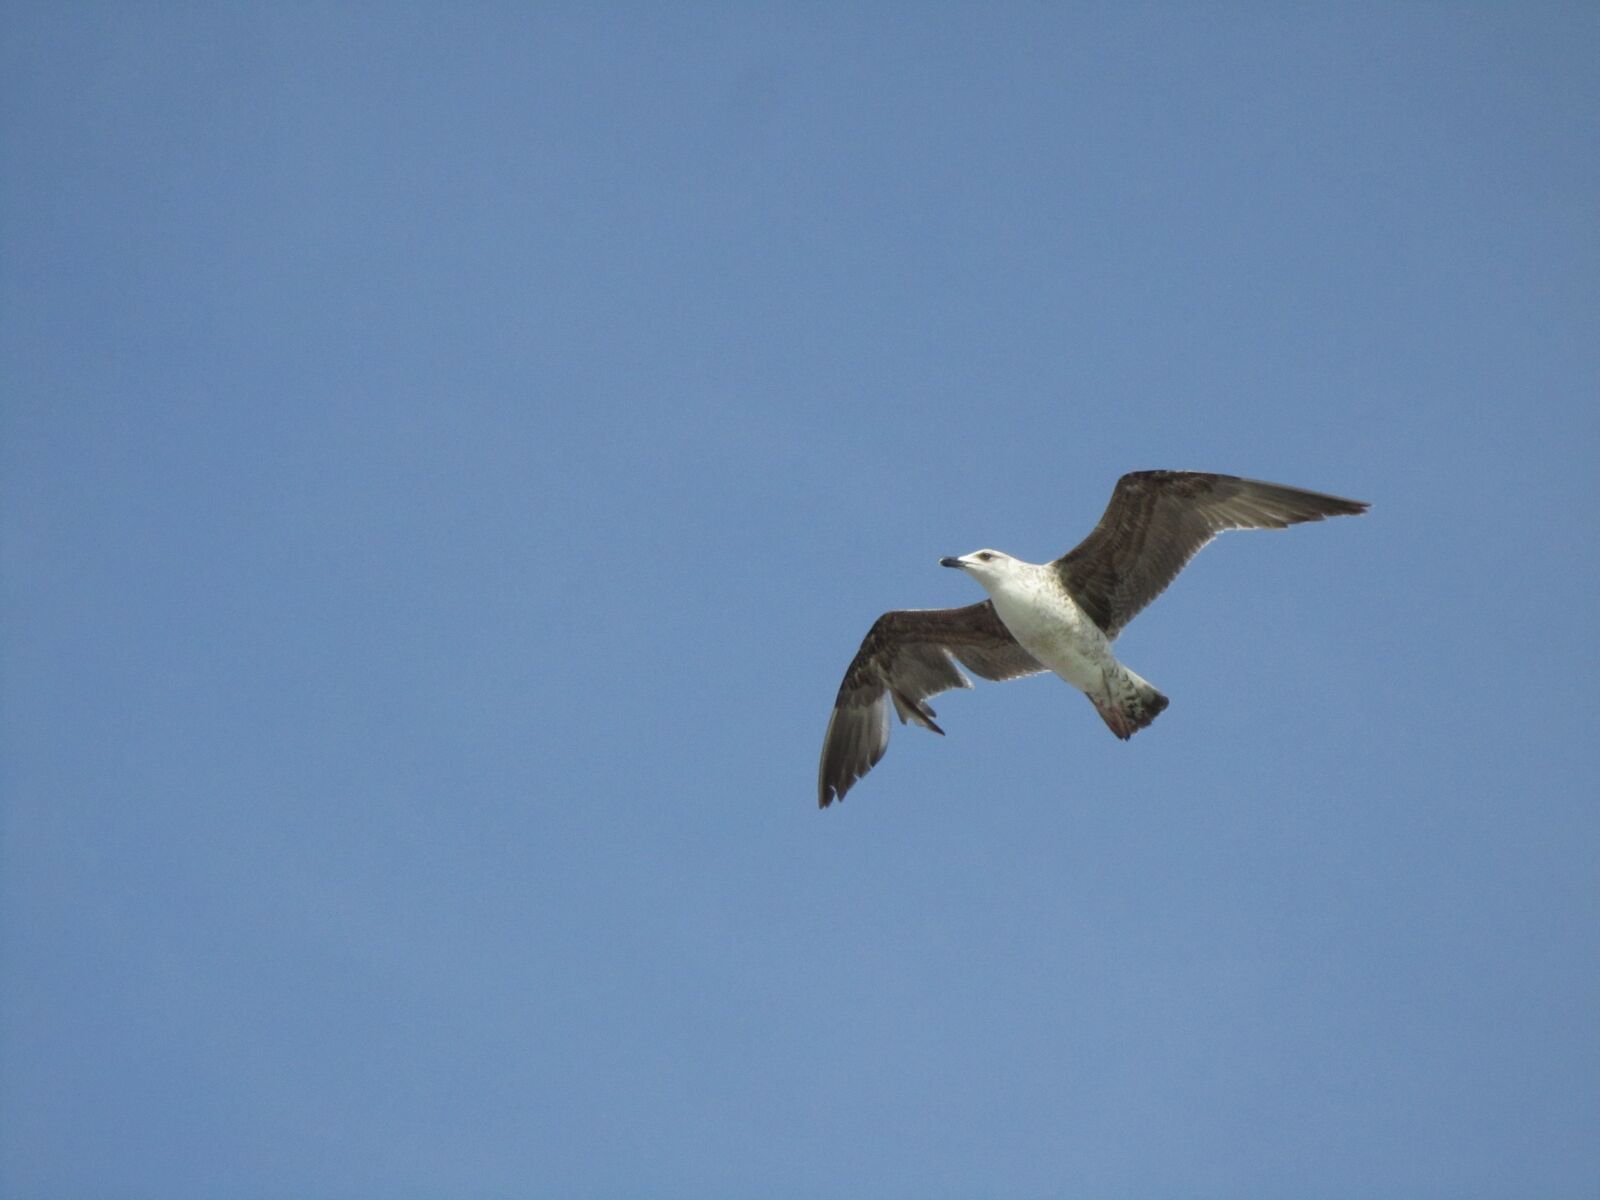 Canon PowerShot SD3500 IS (IXUS 210 / IXY 10S) sample photo. Seagull, flight, bird photography